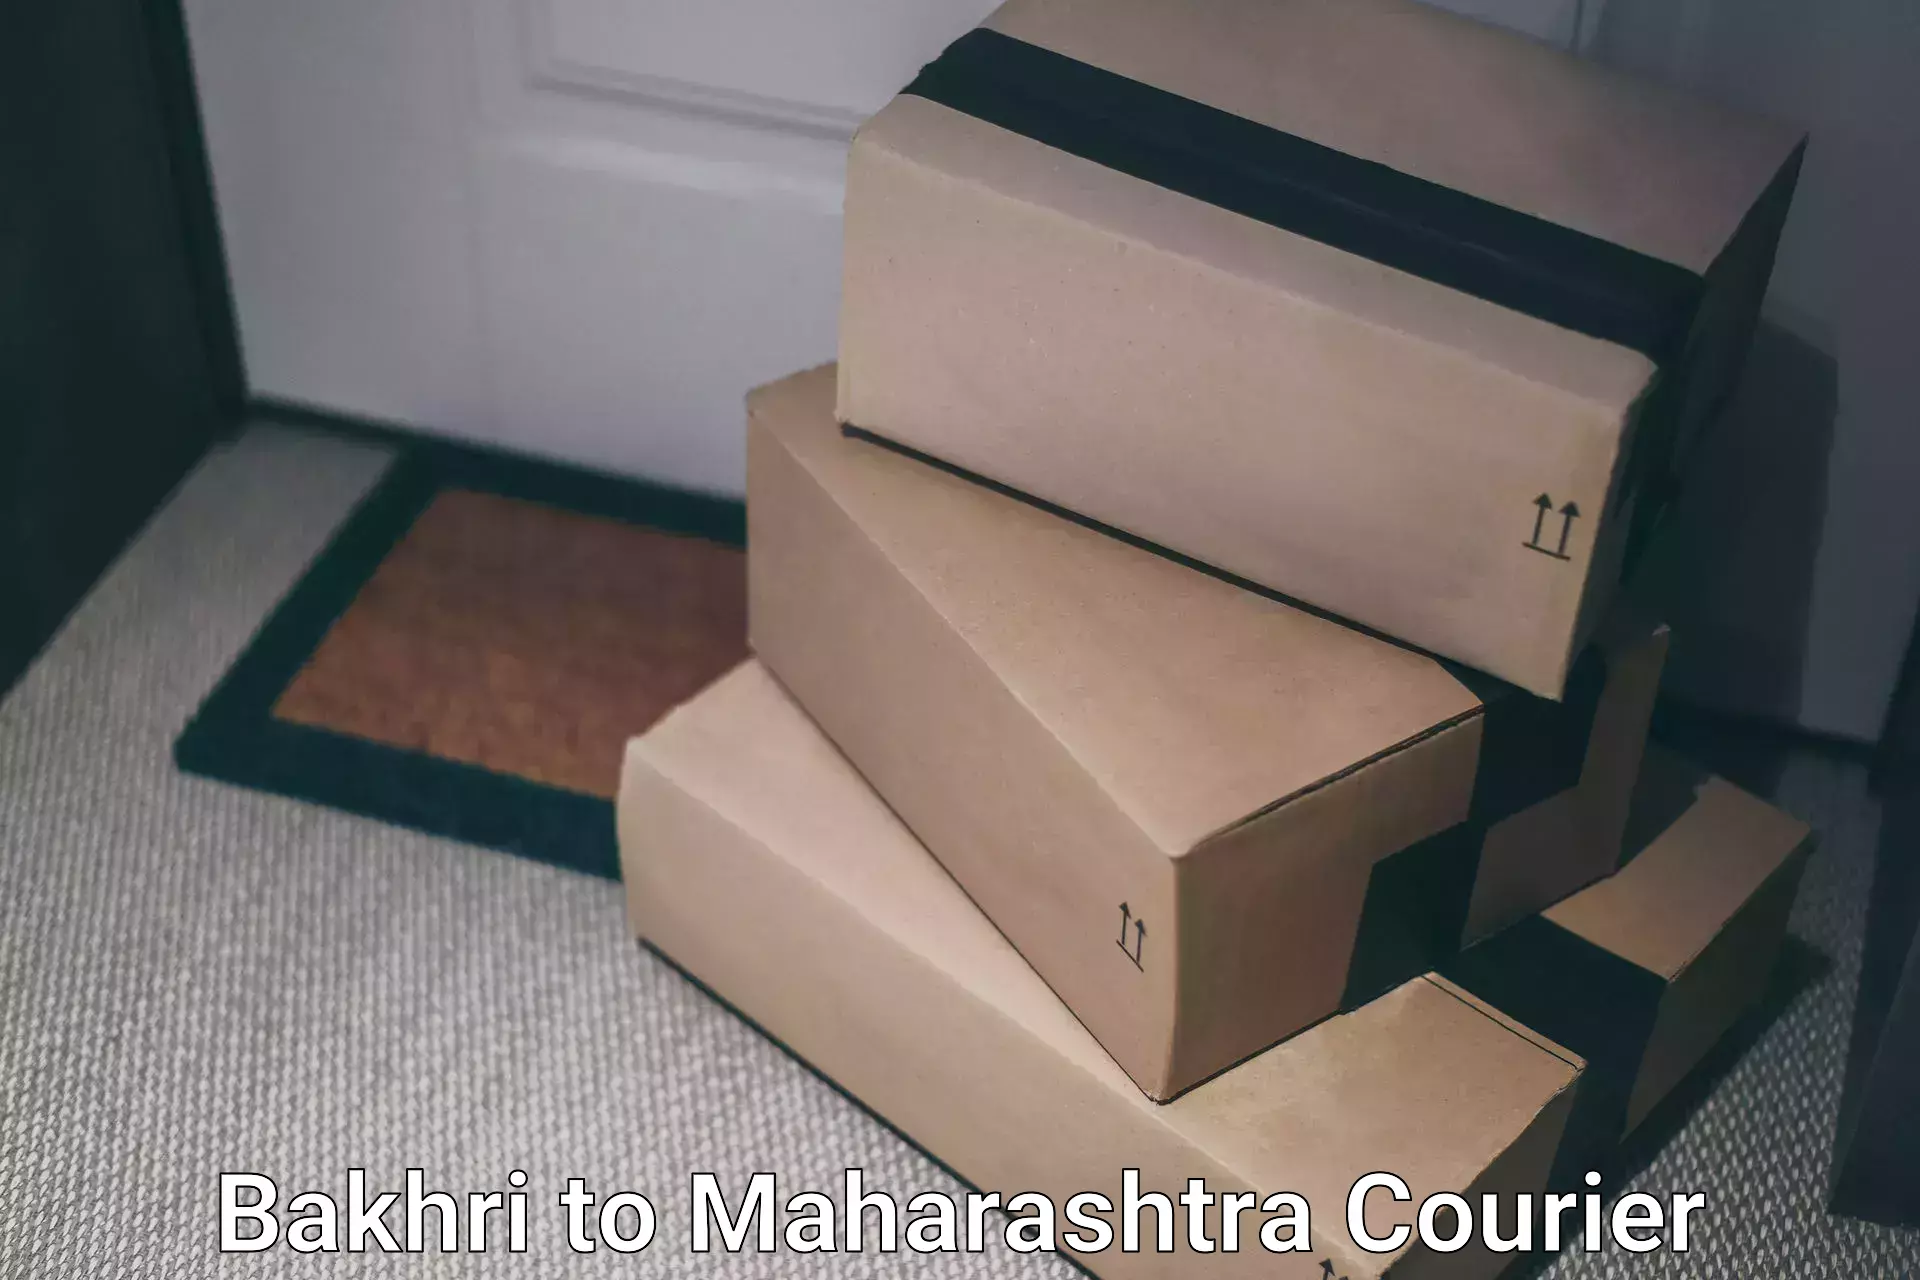 Trackable shipping service Bakhri to Maharashtra